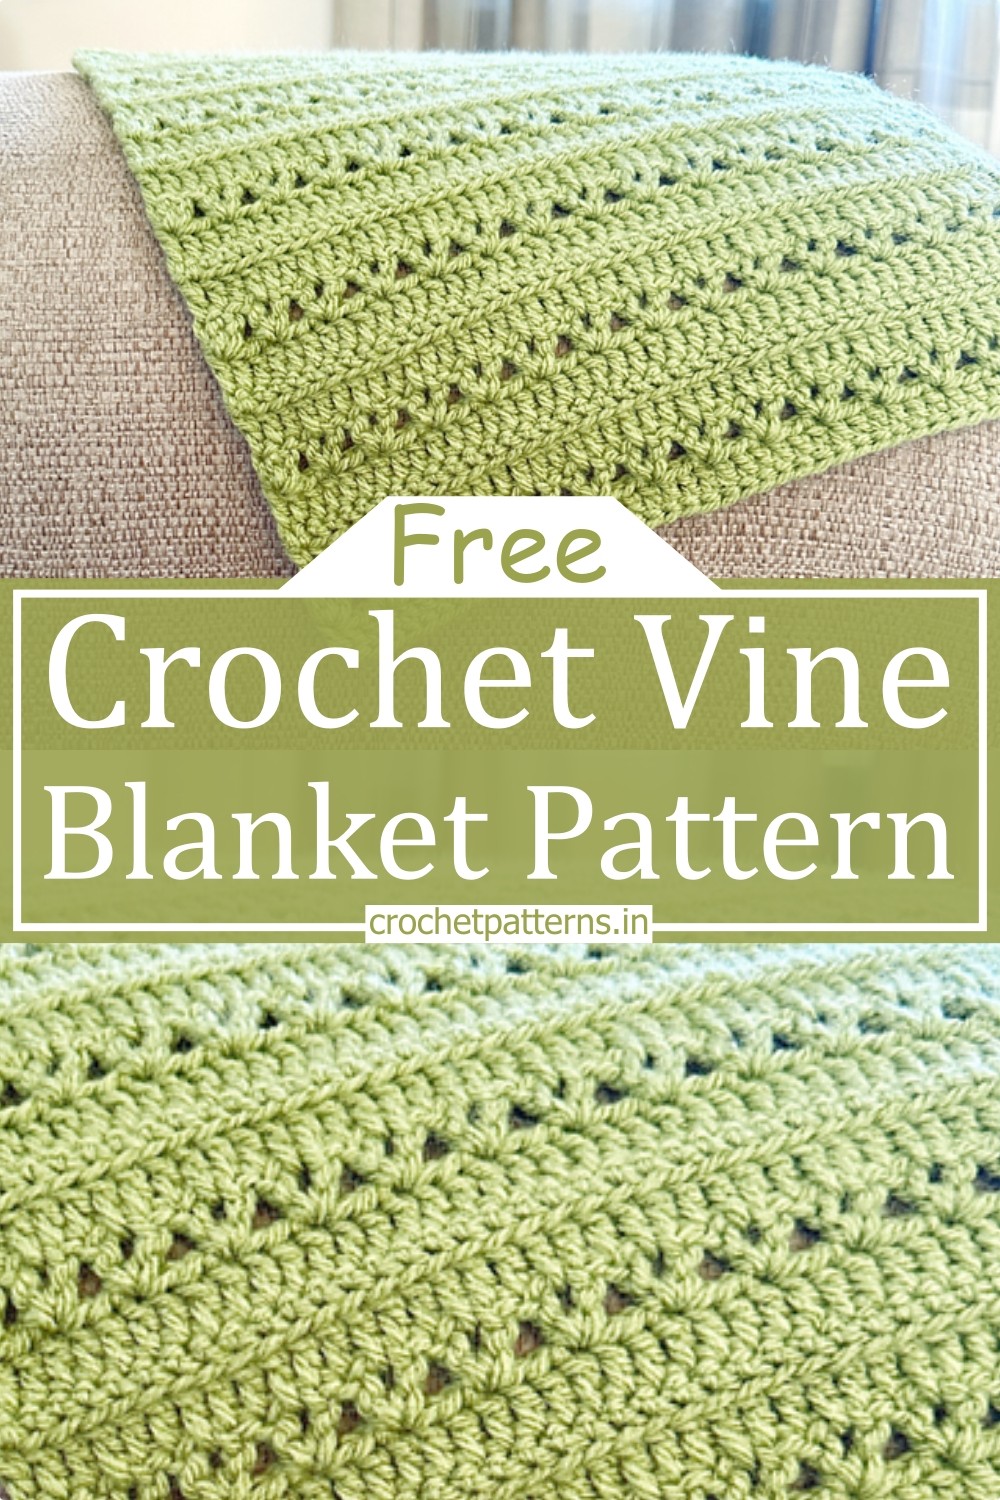 Crochet Vine Blanket Pattern